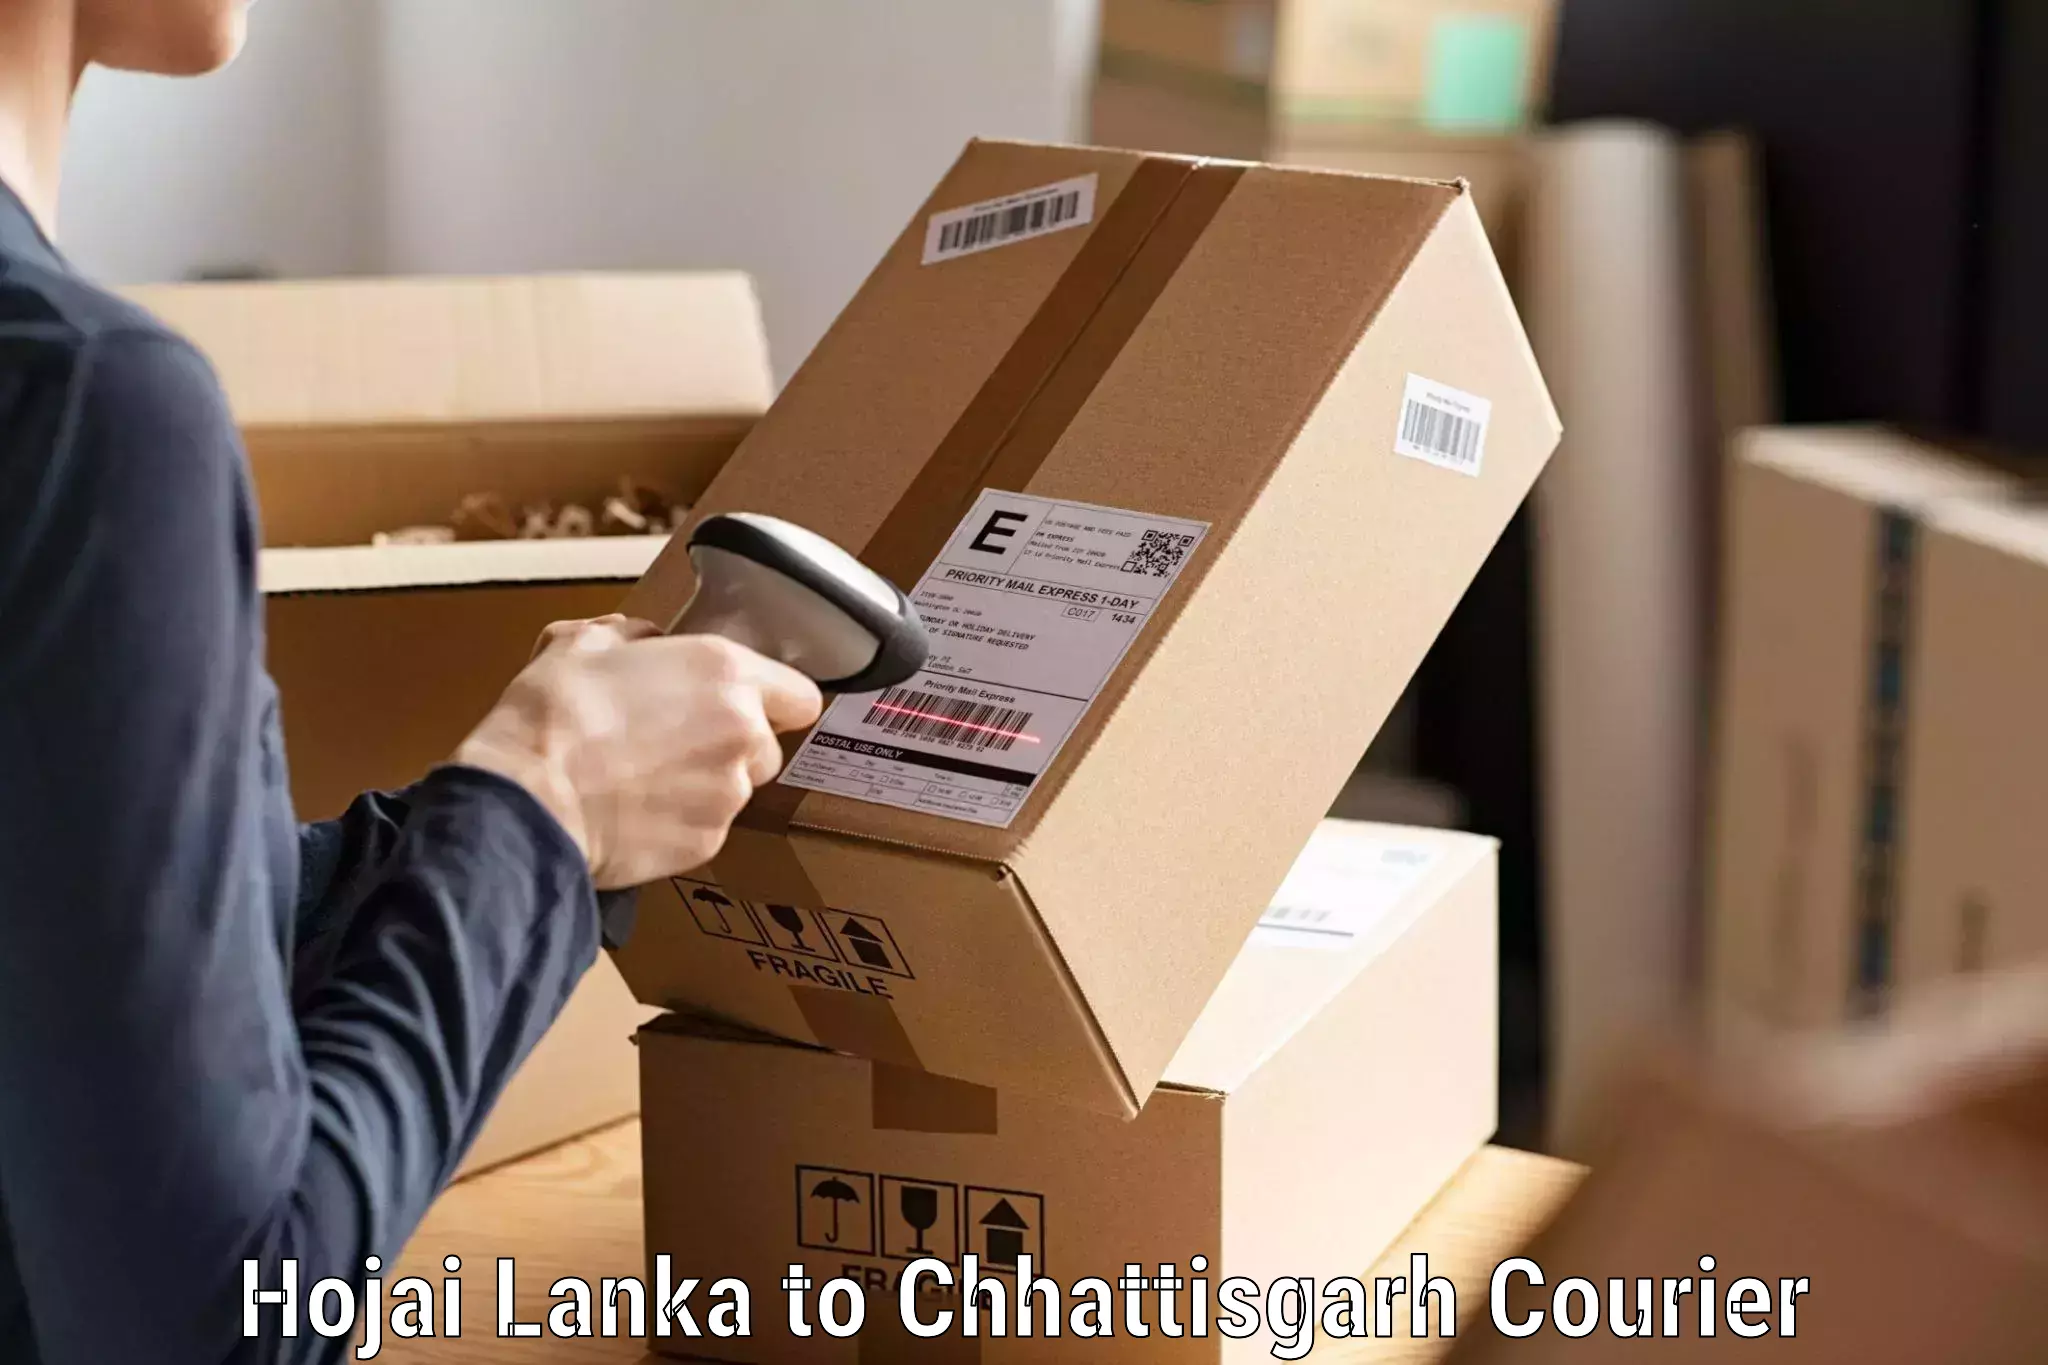 Custom logistics solutions Hojai Lanka to NIT Raipur